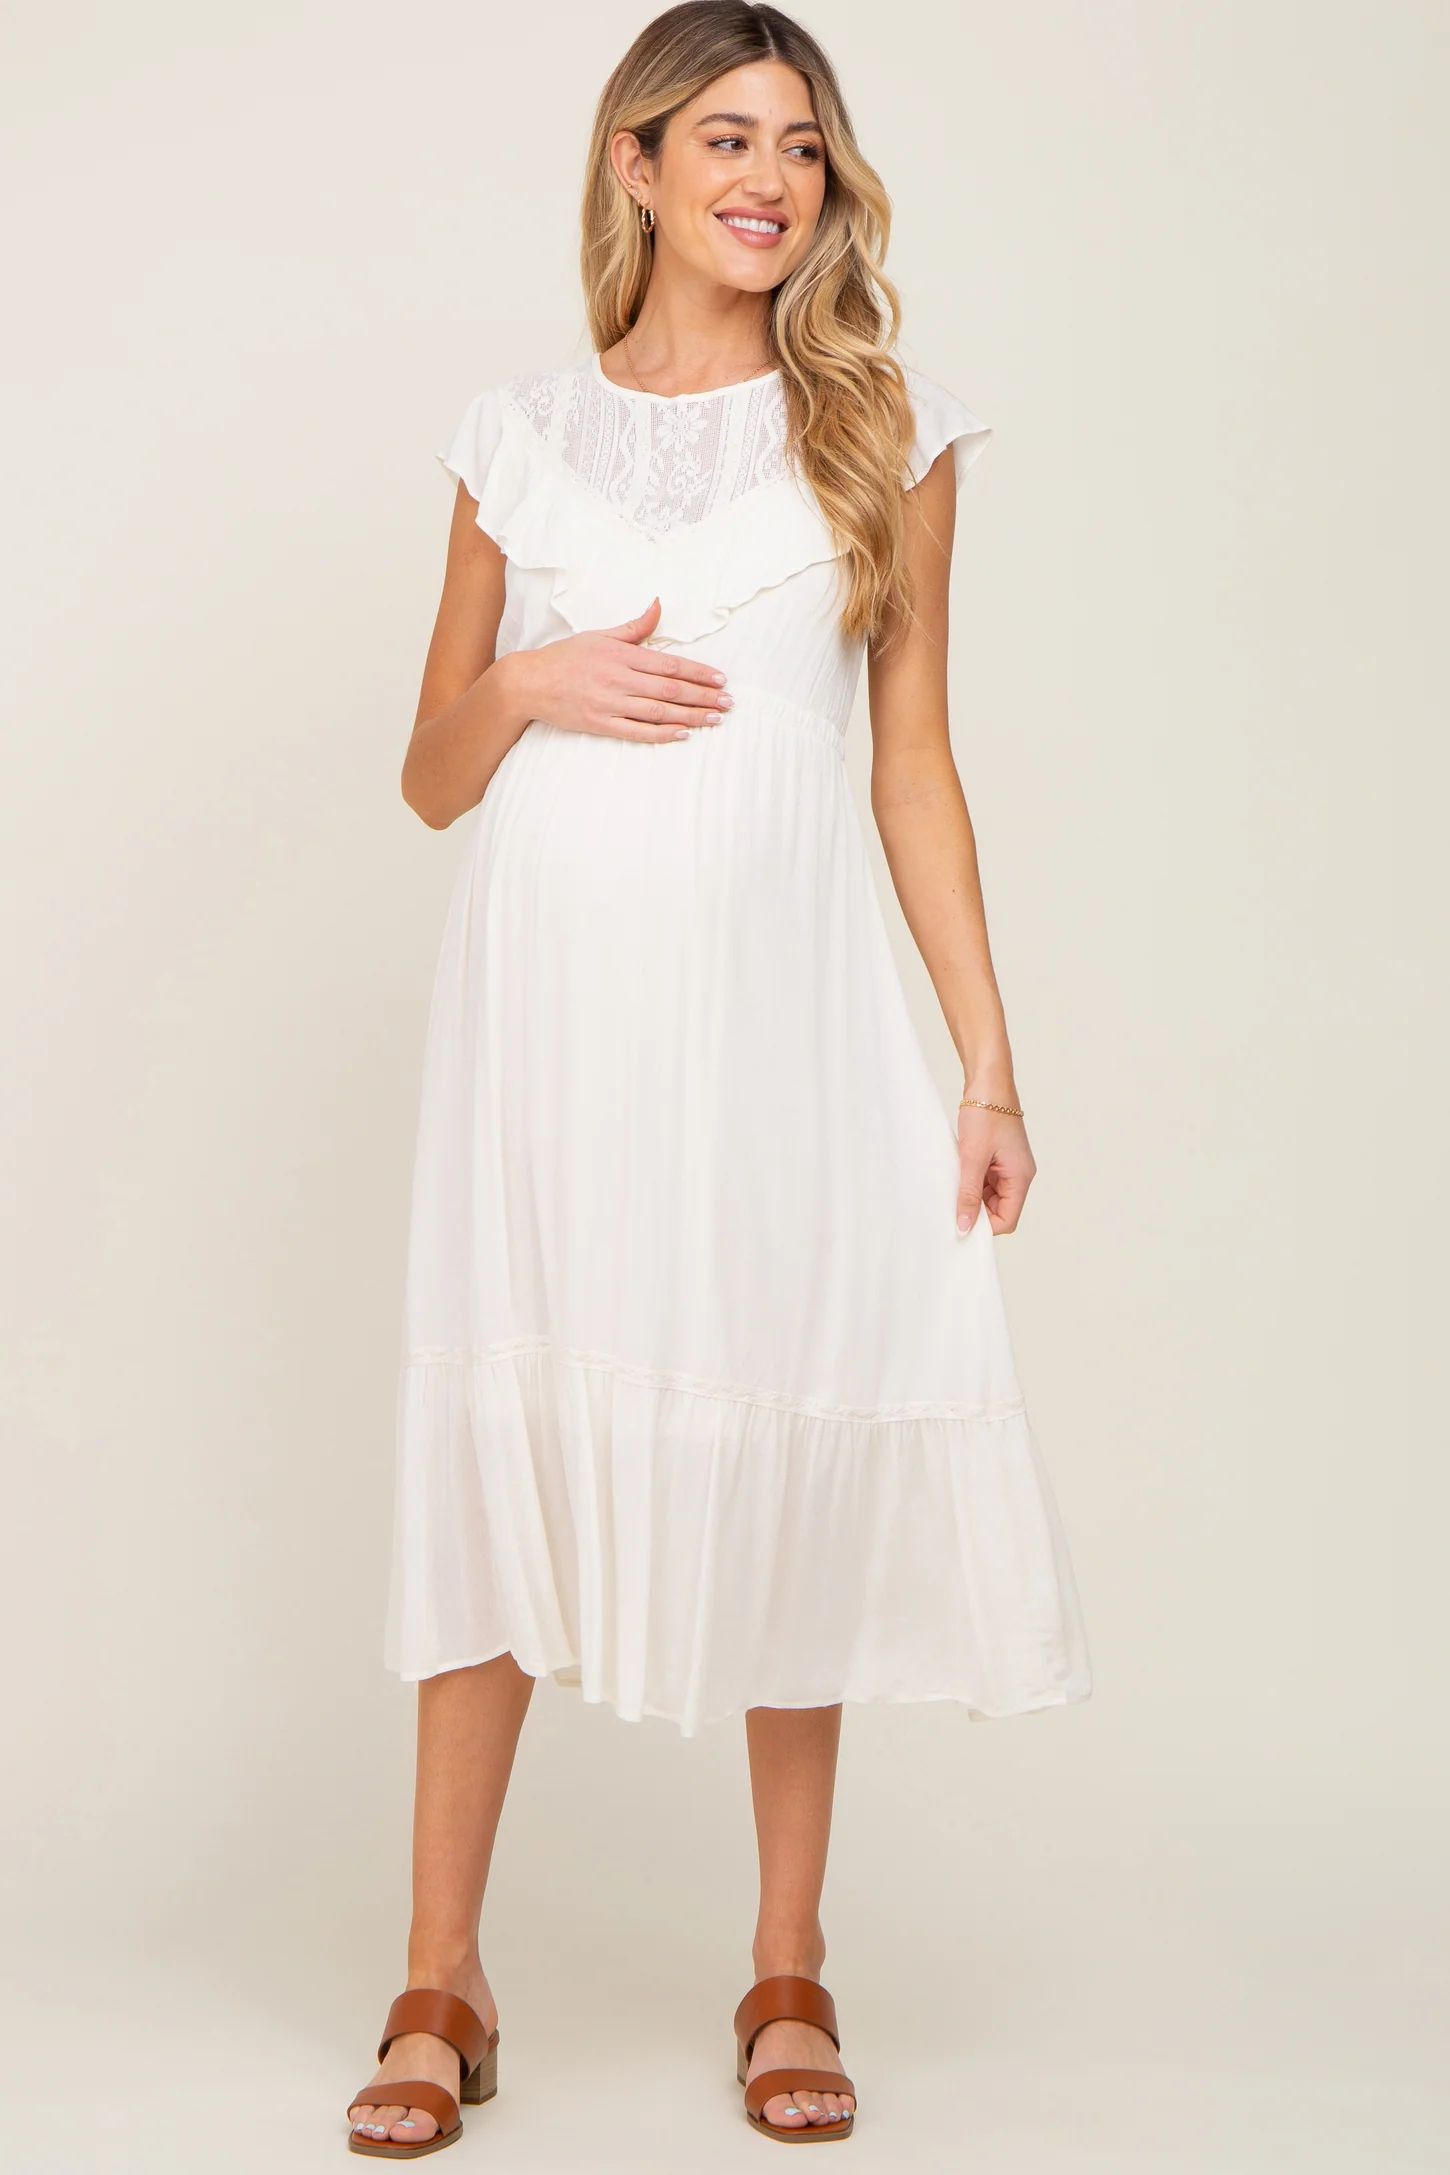 Ivory Lace Inset Ruffle Maternity Midi Dress | PinkBlush Maternity